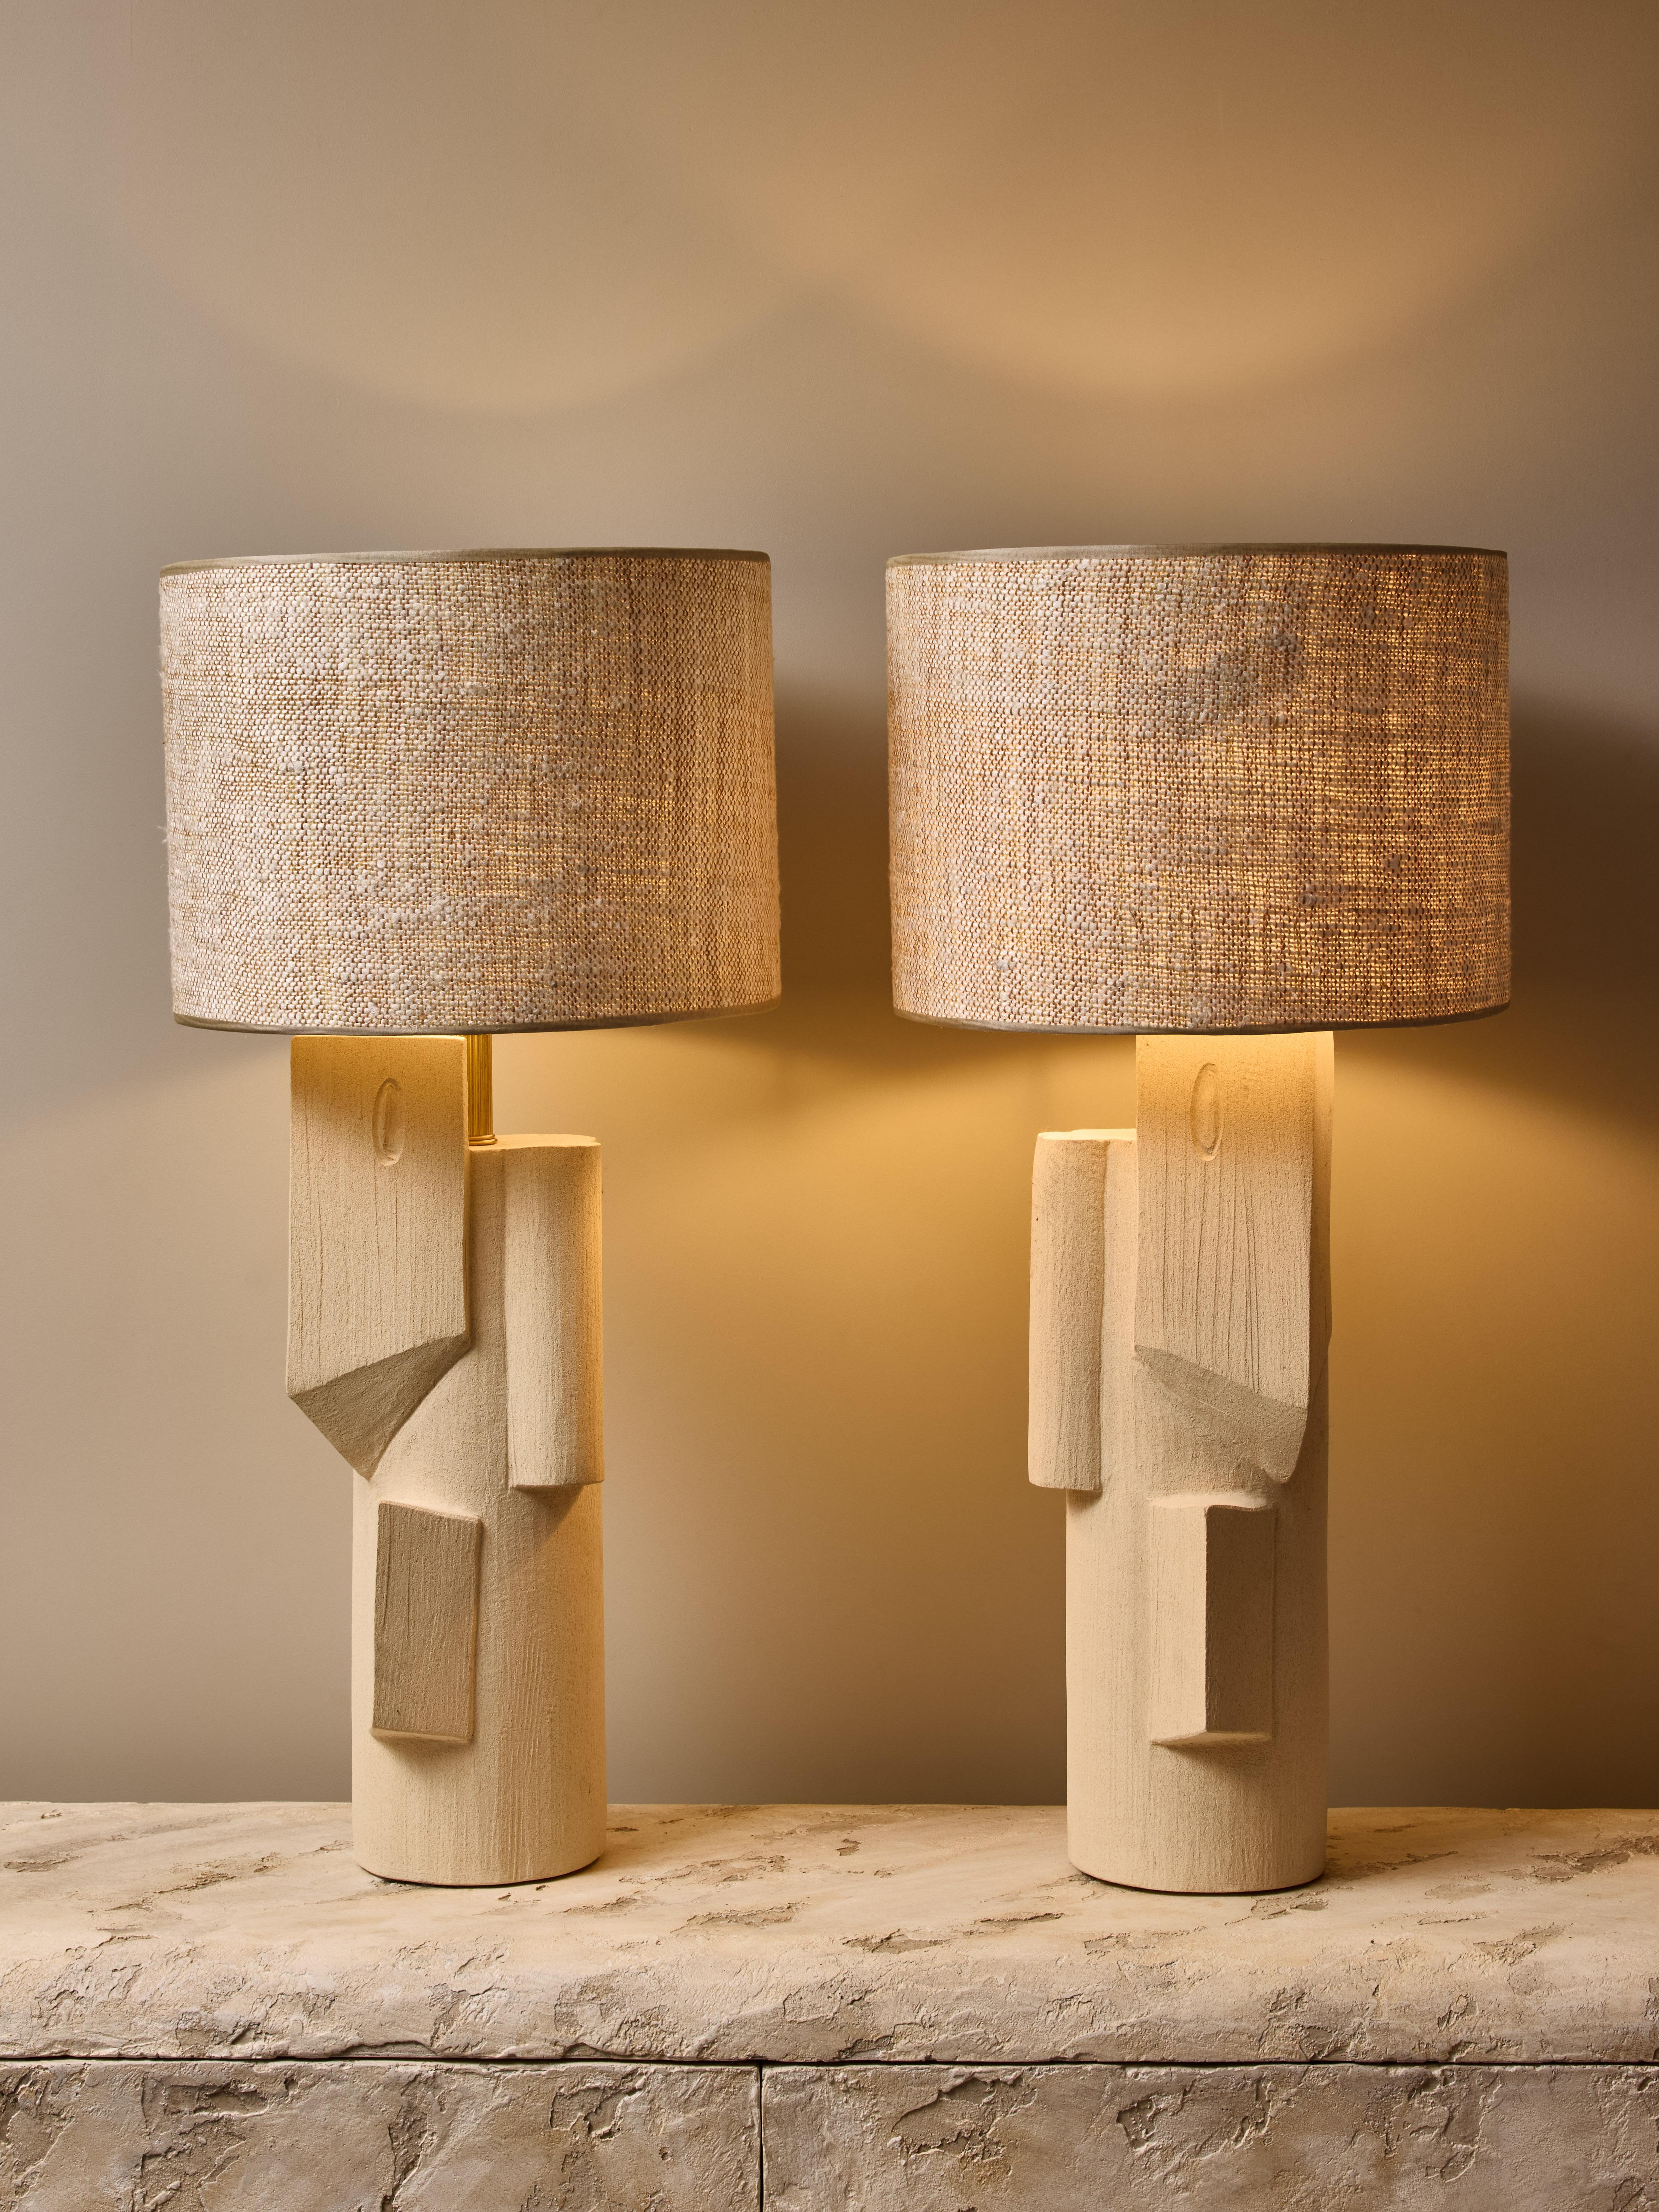 Ein Paar Keramik-Tischlampen von der talentierten französischen Künstlerin Olivia Cognet.

Diese großen röhrenförmigen Lampen haben ein gespiegeltes Design mit scharfen geometrischen Formen, Messingbeschläge und einen individuellen